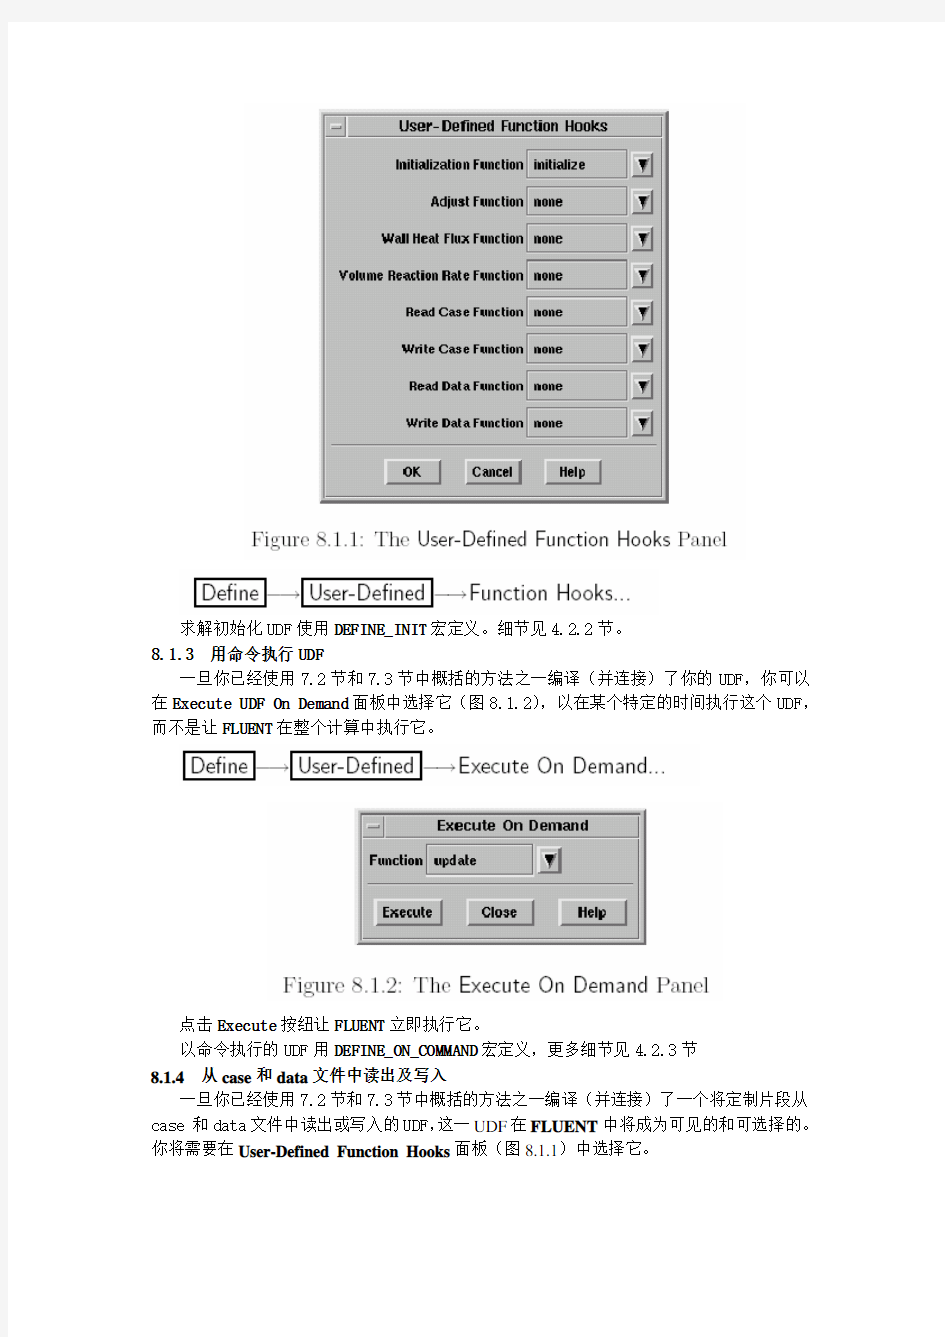 Fluent中的UDF详细中文教程(8)